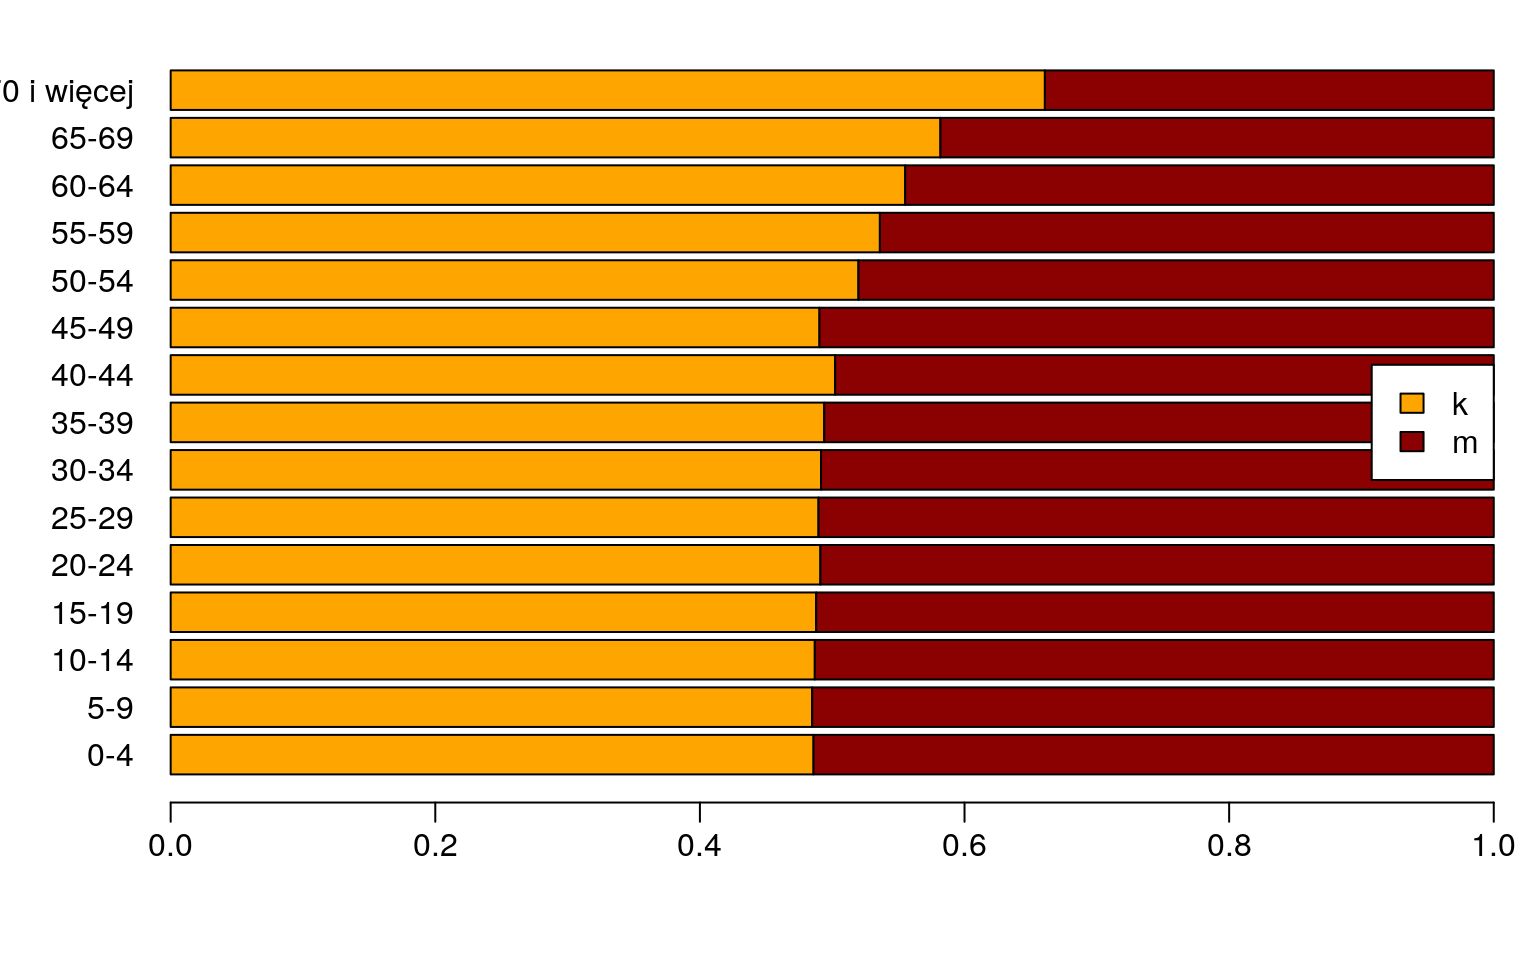 Prezentacja proporcji w poszczególnych grupach wiekowych.